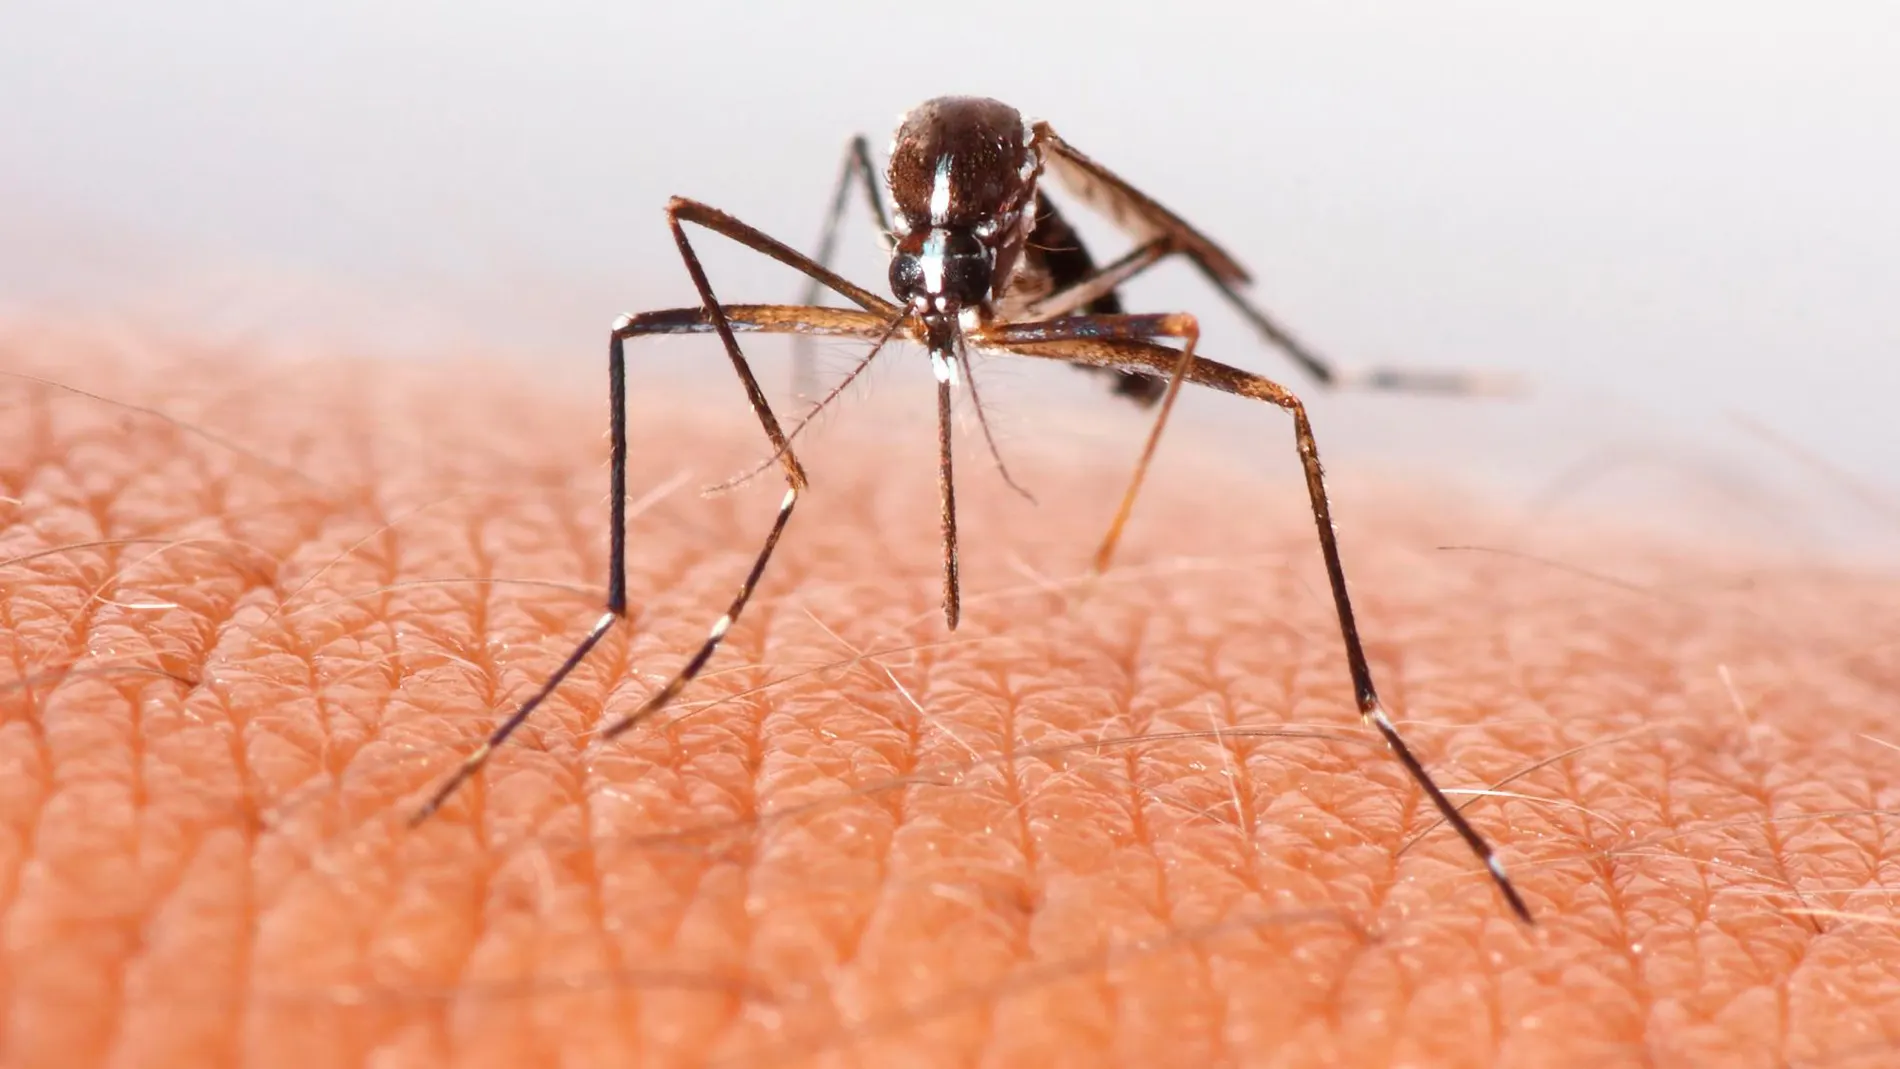 A las mosquitos hembra les atrae más el sudor y el olor particular de ciertas personas